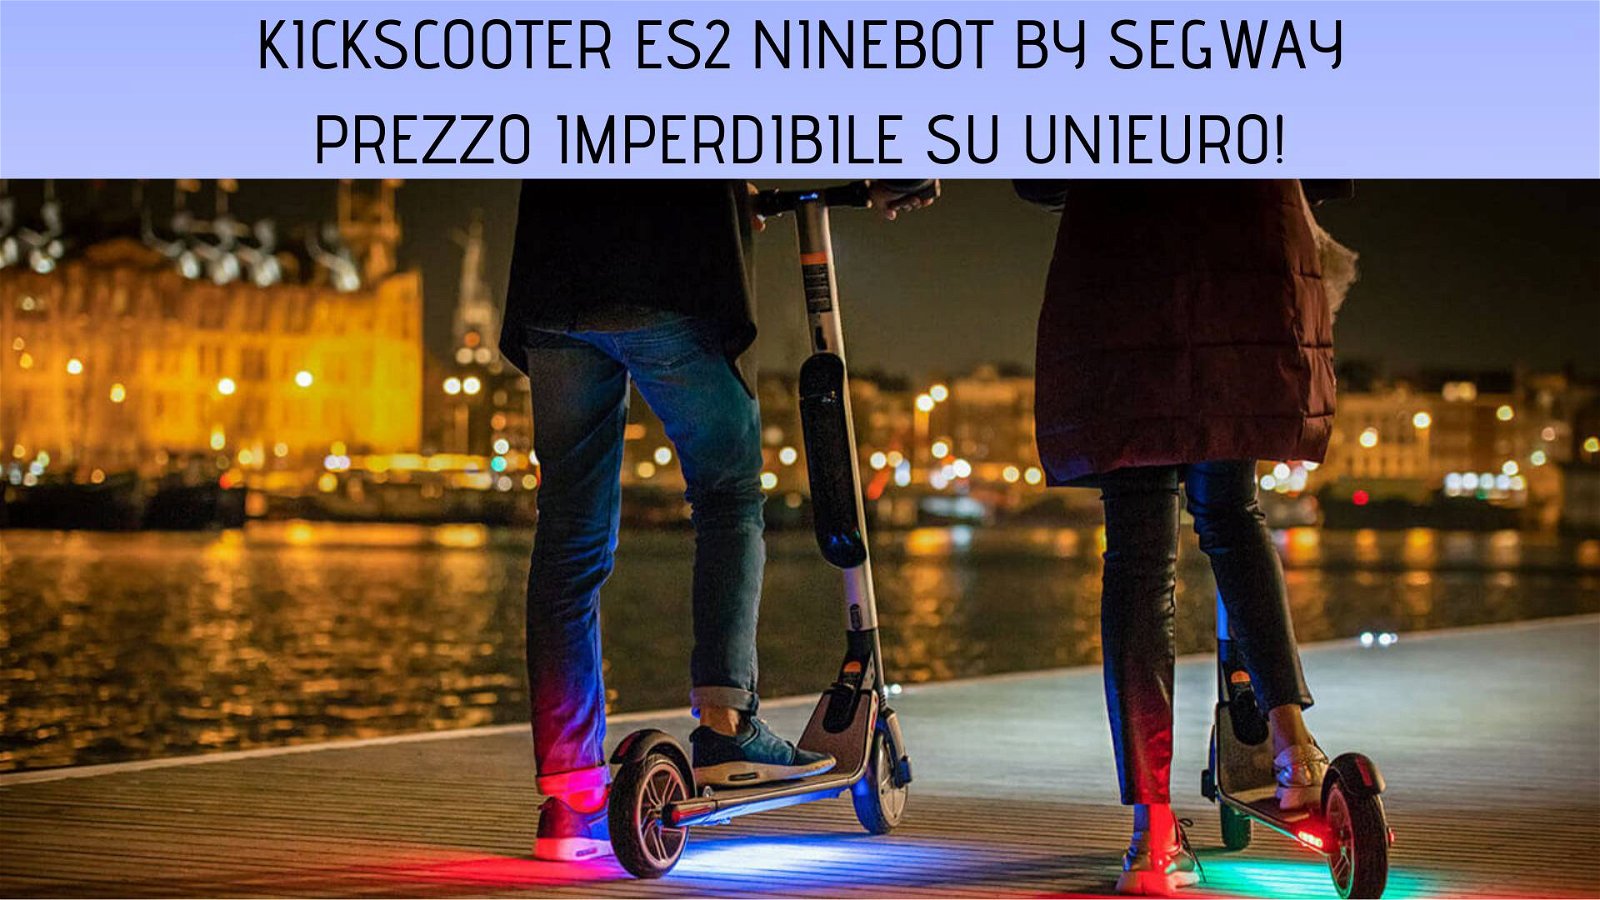 Immagine di Monopattino elettrico KickScooter ES2 Ninebot by Segway ad un prezzo imperdibile su Unieuro!